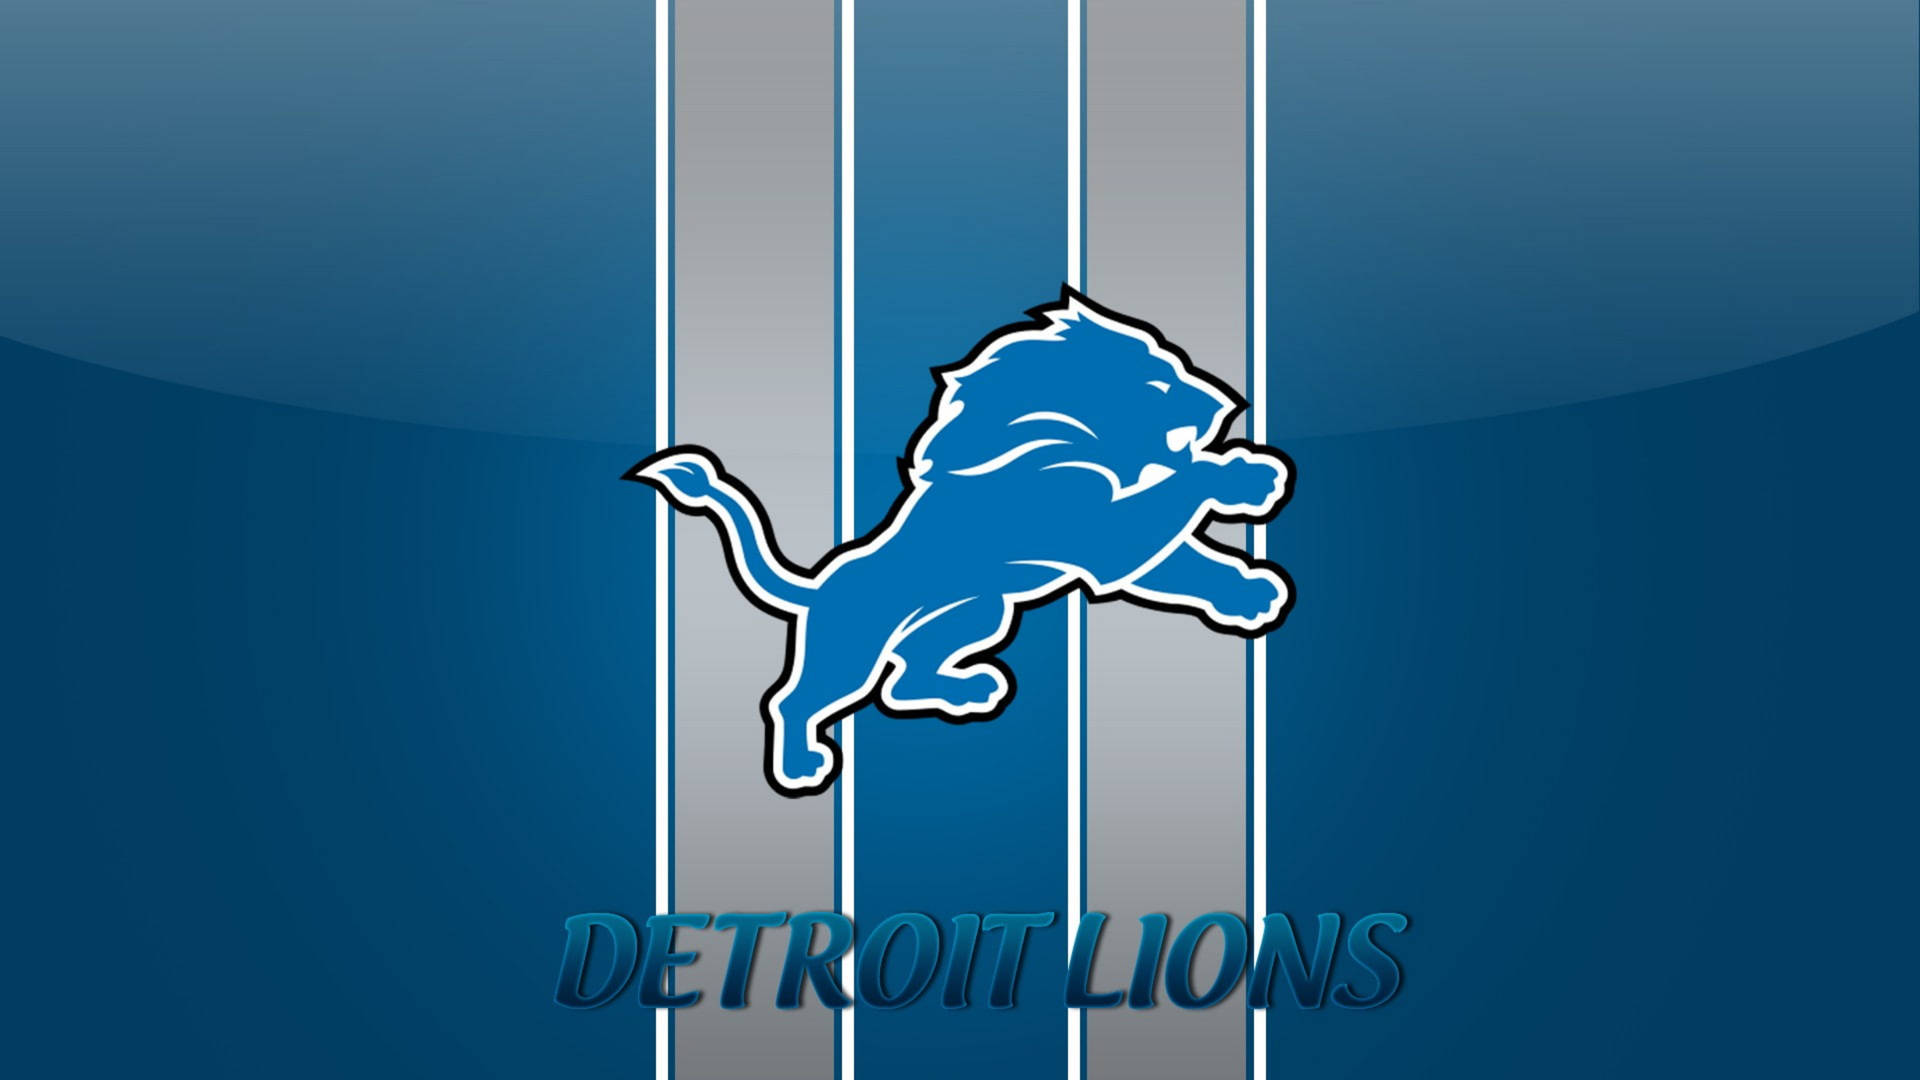 Fondods De Detroit Lions